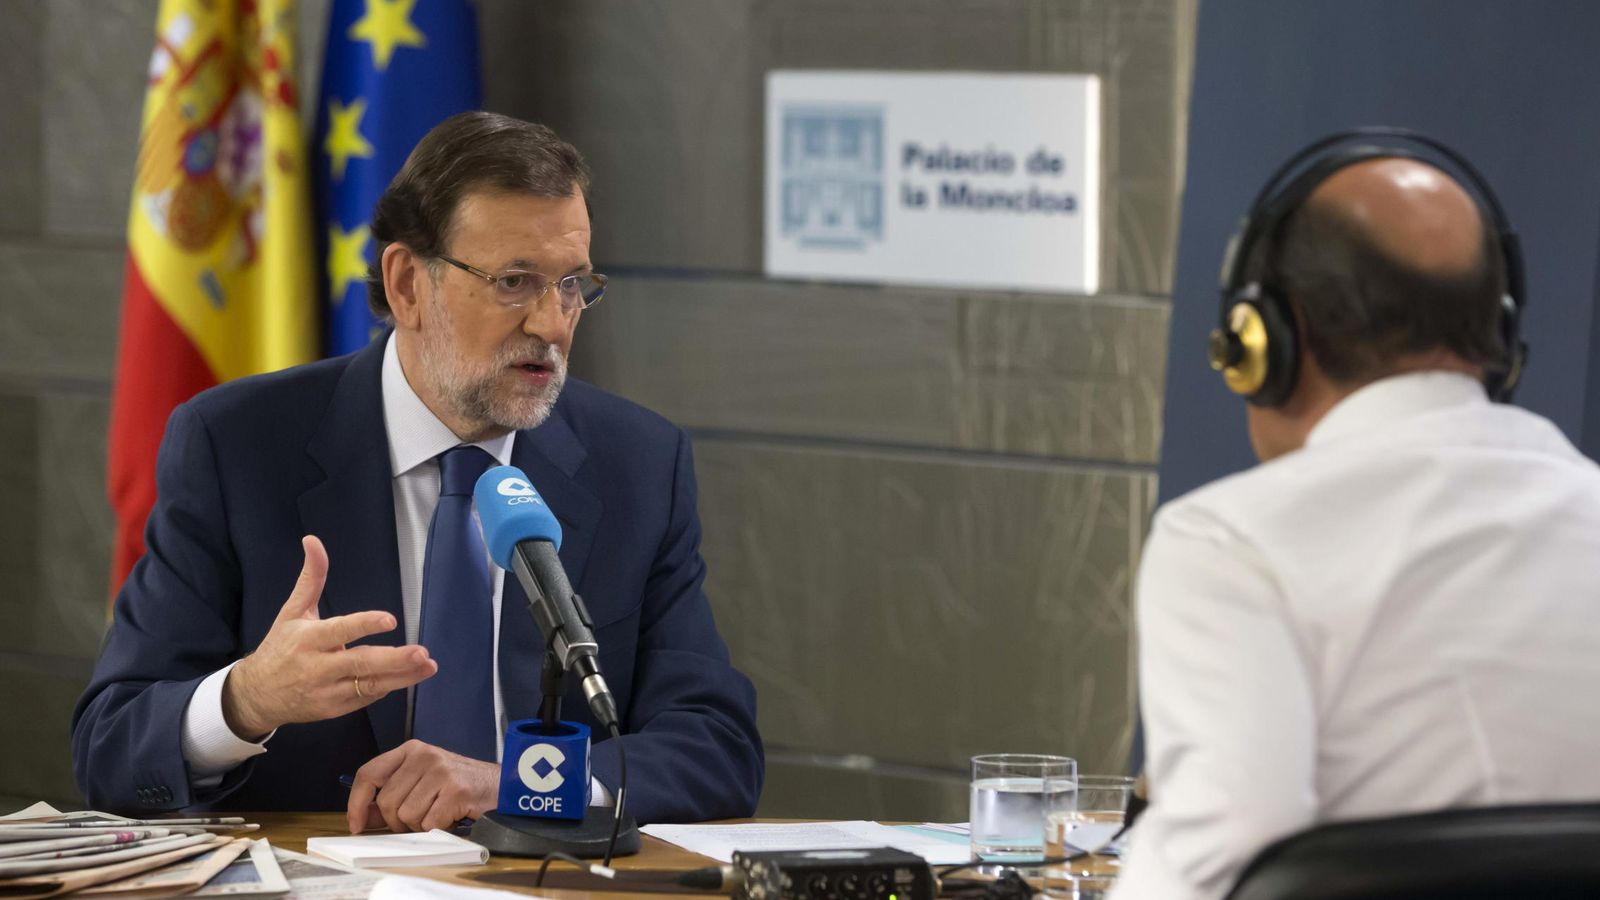 Foto: Fotografía facilitada por Presidencia del Gobierno, del presidente, Mariano Rajoy, durante la entrevista que ha concedido a la cadena Cope. (Efe)